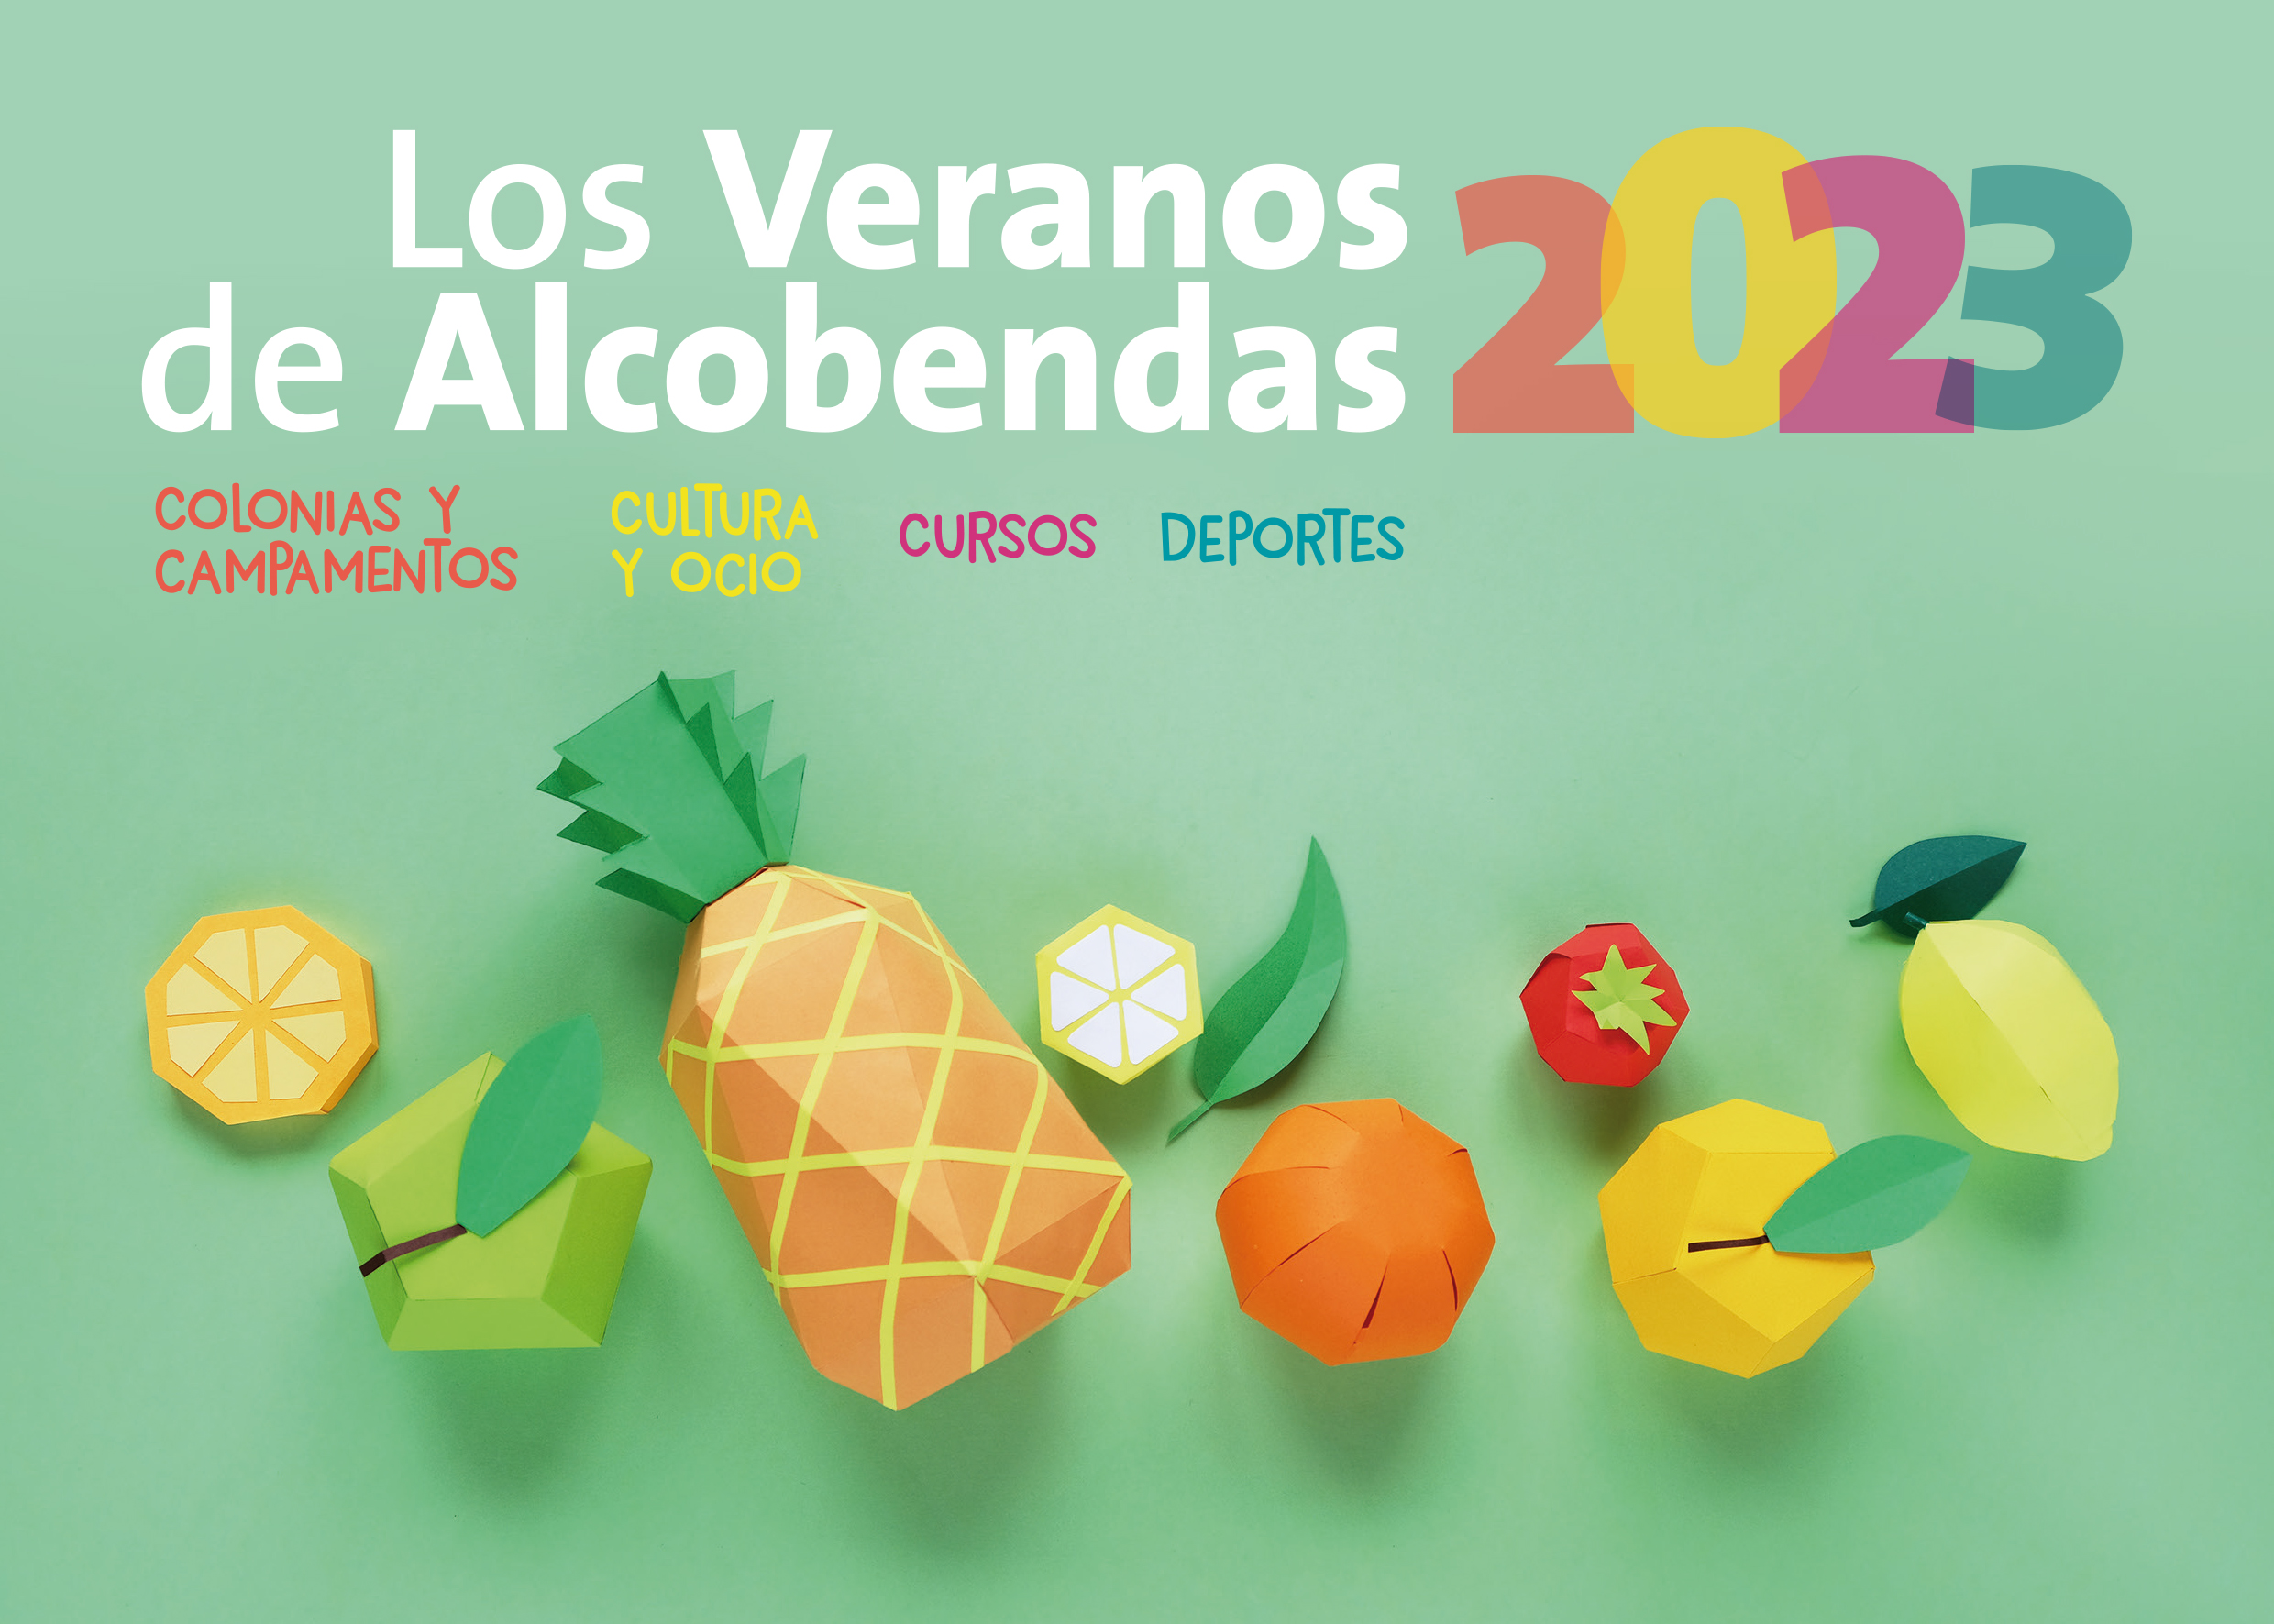 Veranos de Alcobendas 2023 logo campaña